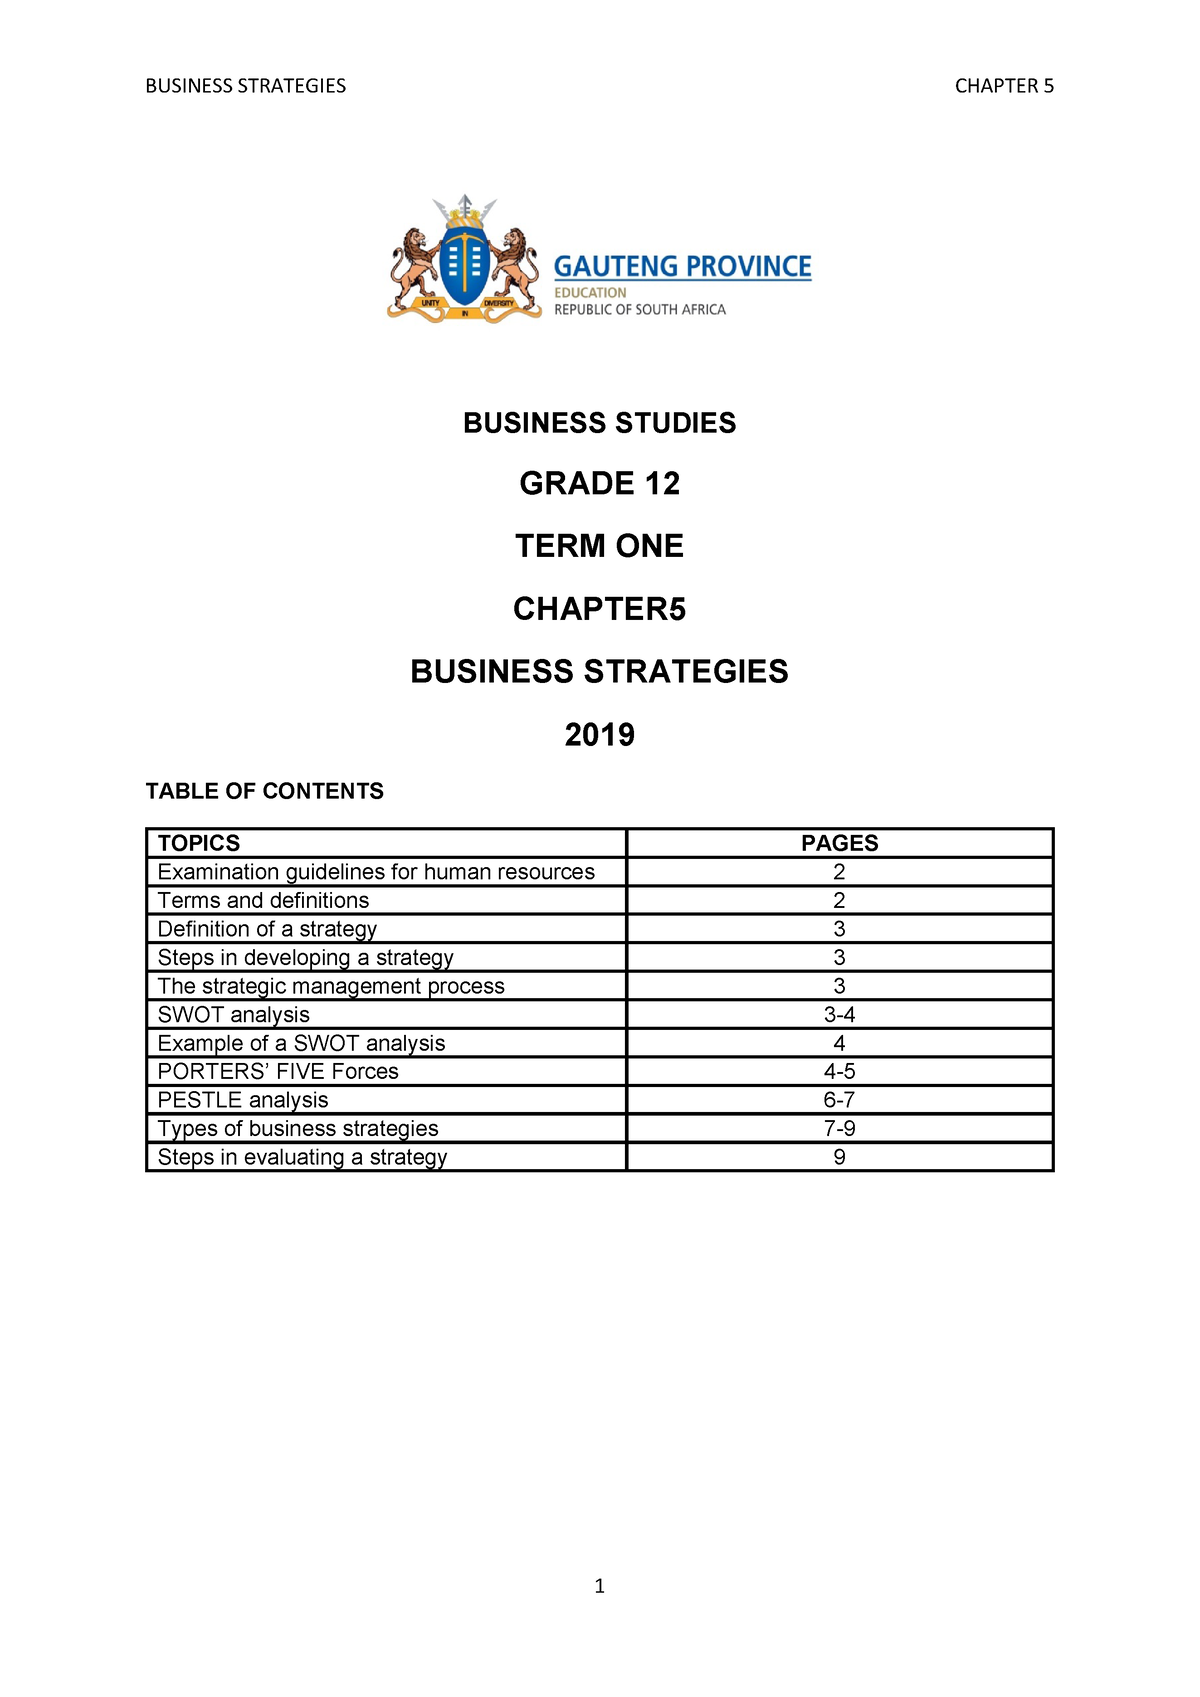 business studies grade 12 assignment term 1